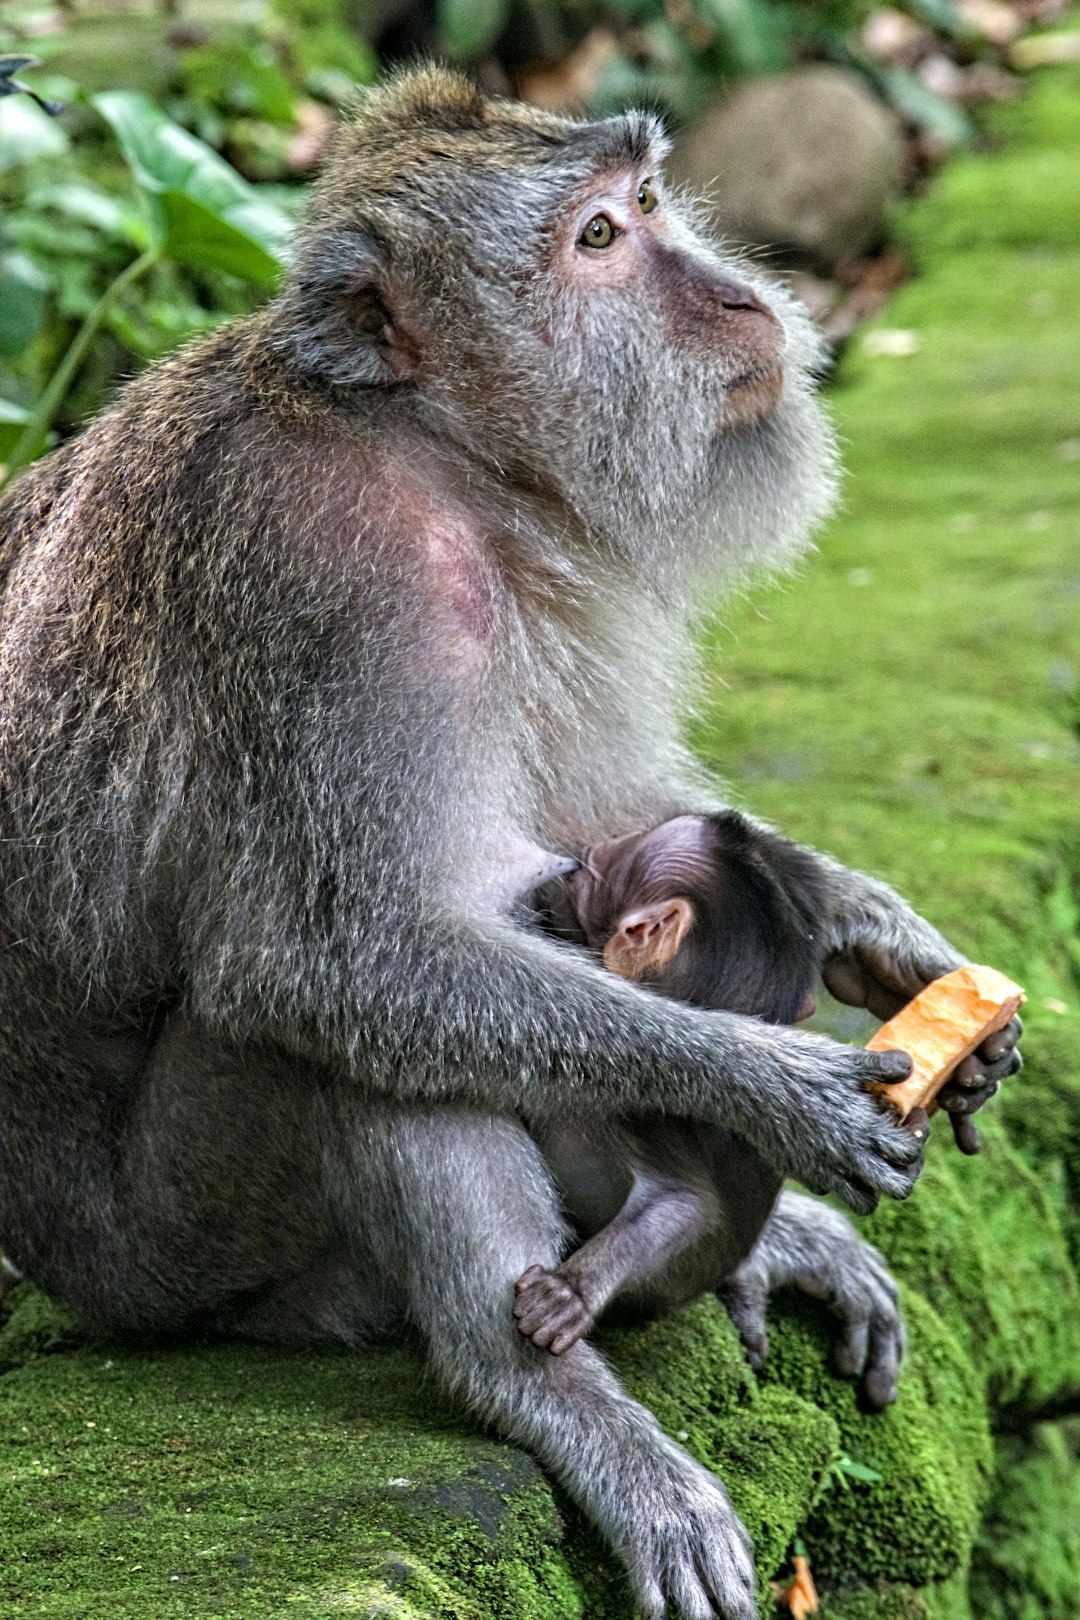 Wildlife photo spot Sacred Monkey Forest Sanctuary Bali